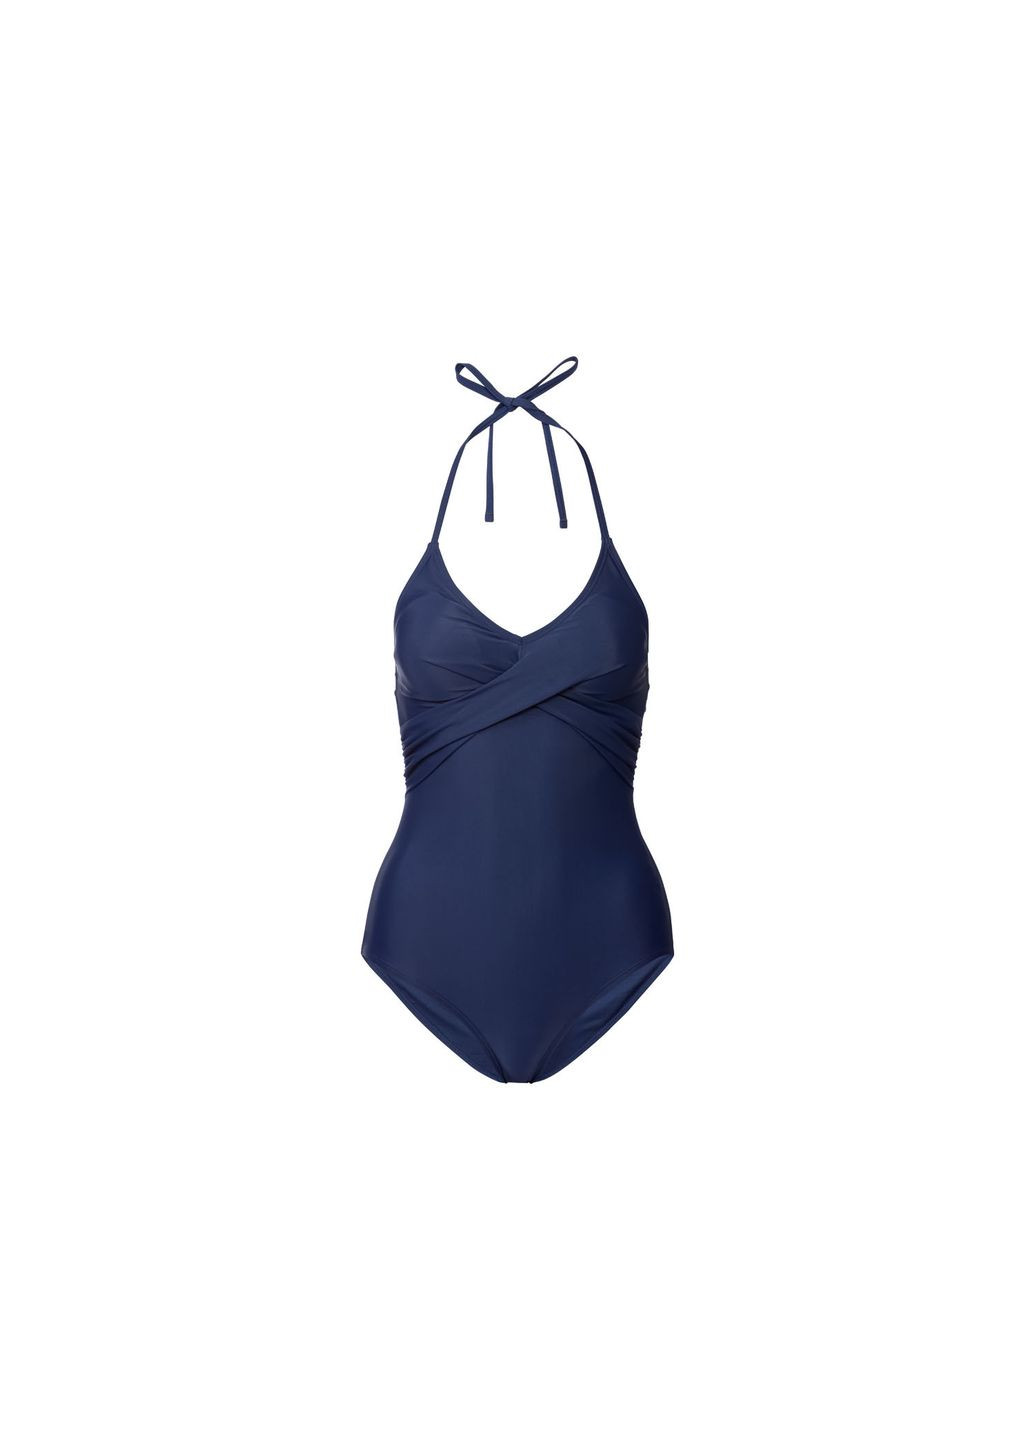 Темно-синий купальник слитный на подкладке для женщины lycra® 372115 бикини Esmara С открытой спиной, С открытыми плечами